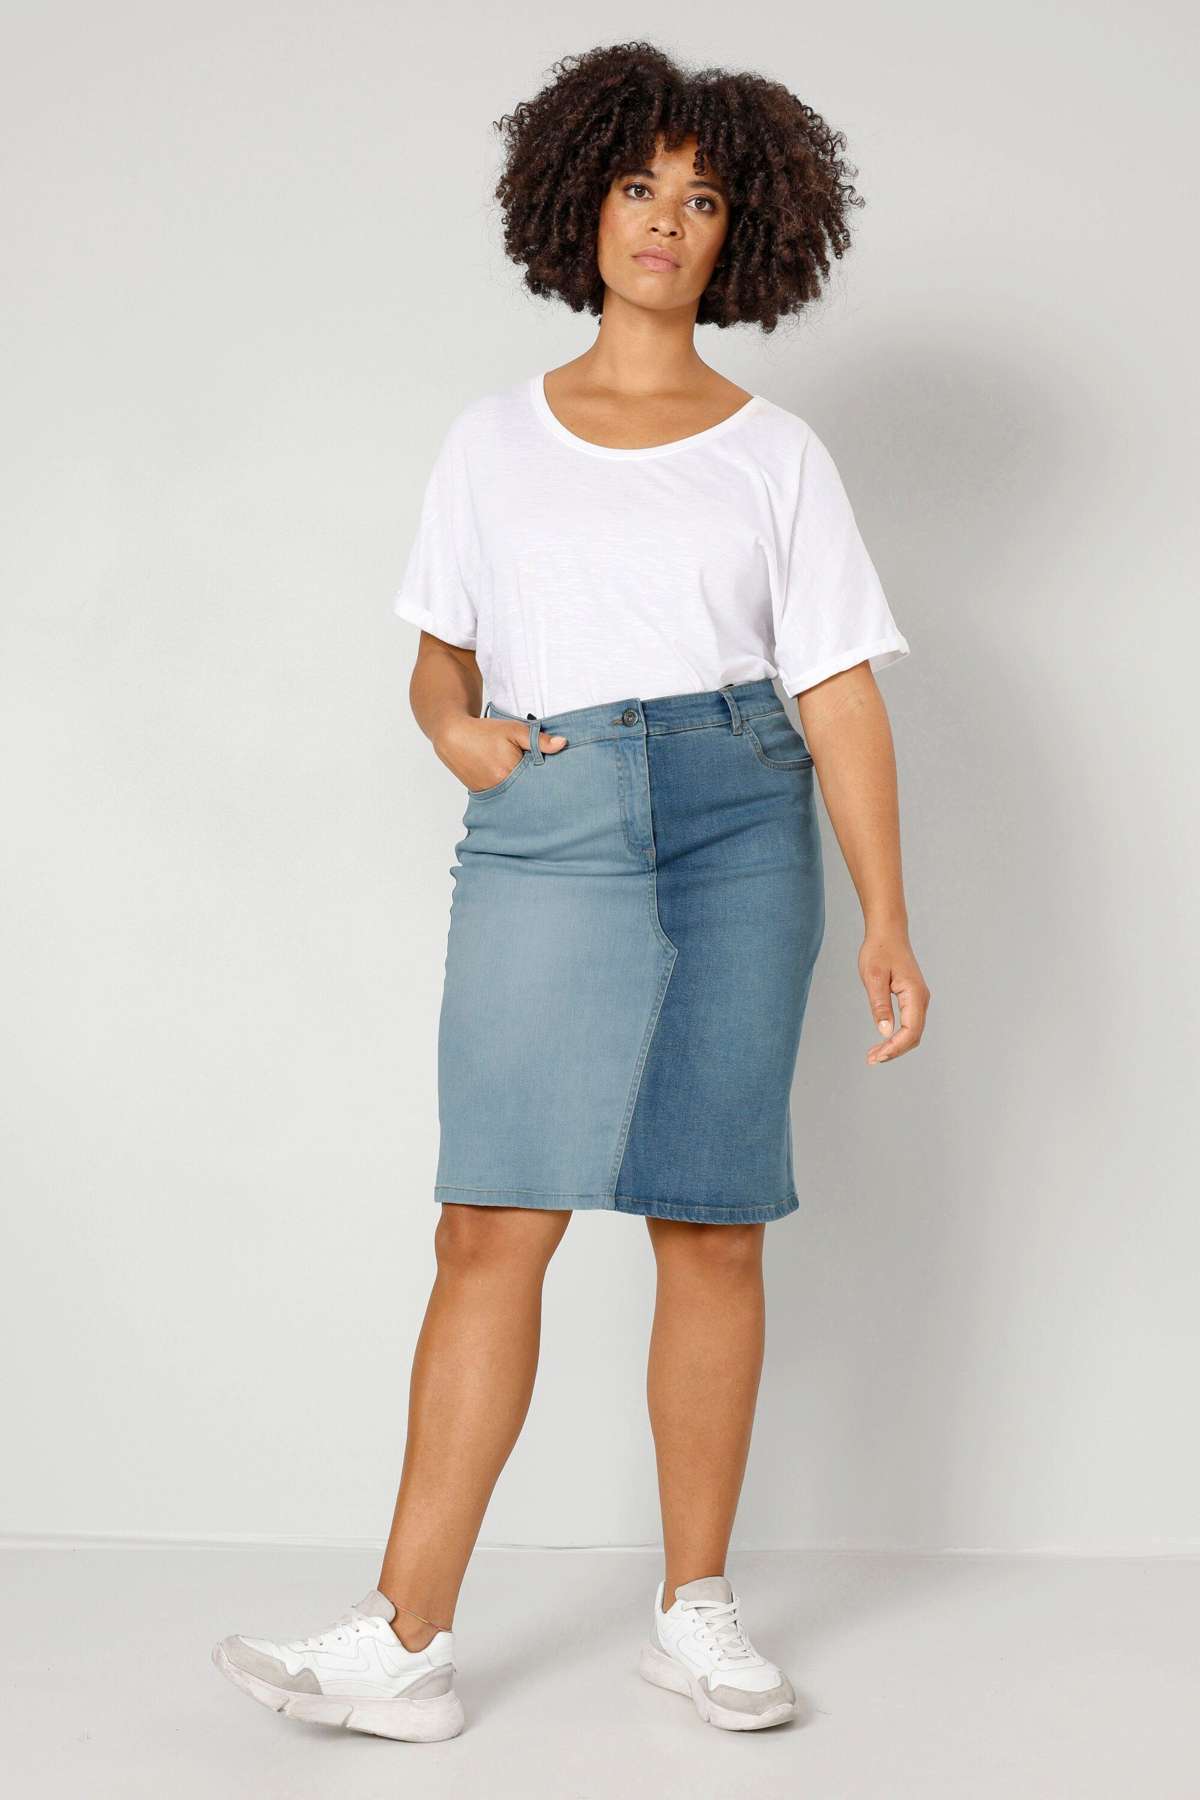 Джинсовая юбка джинсовая юбка прямого кроя, двухцветная, с 5 карманами